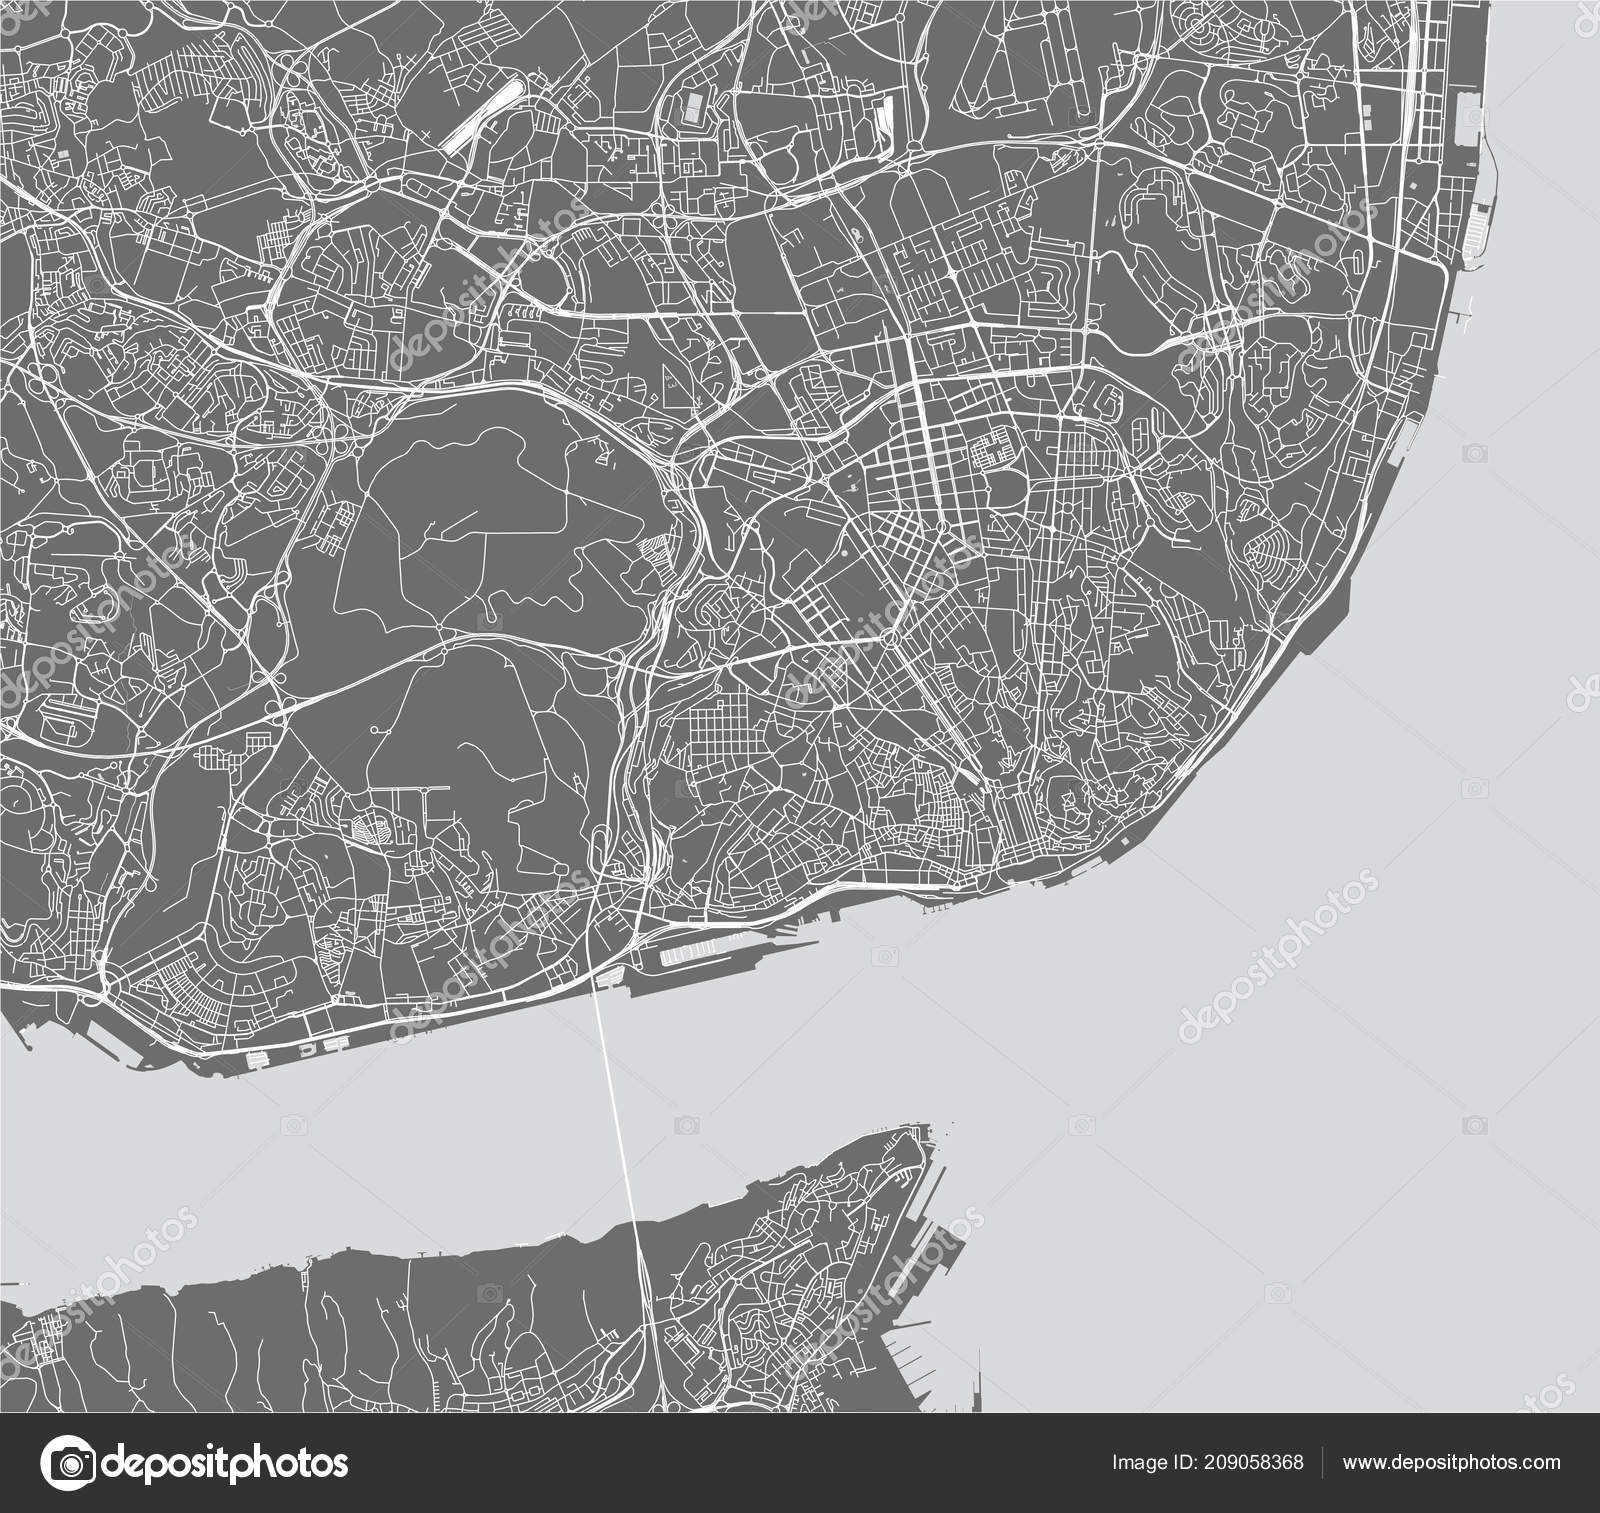 Mapa Vetorial Portugal Com Principais Cidades Rios imagem vetorial de  Lesniewski© 215948804